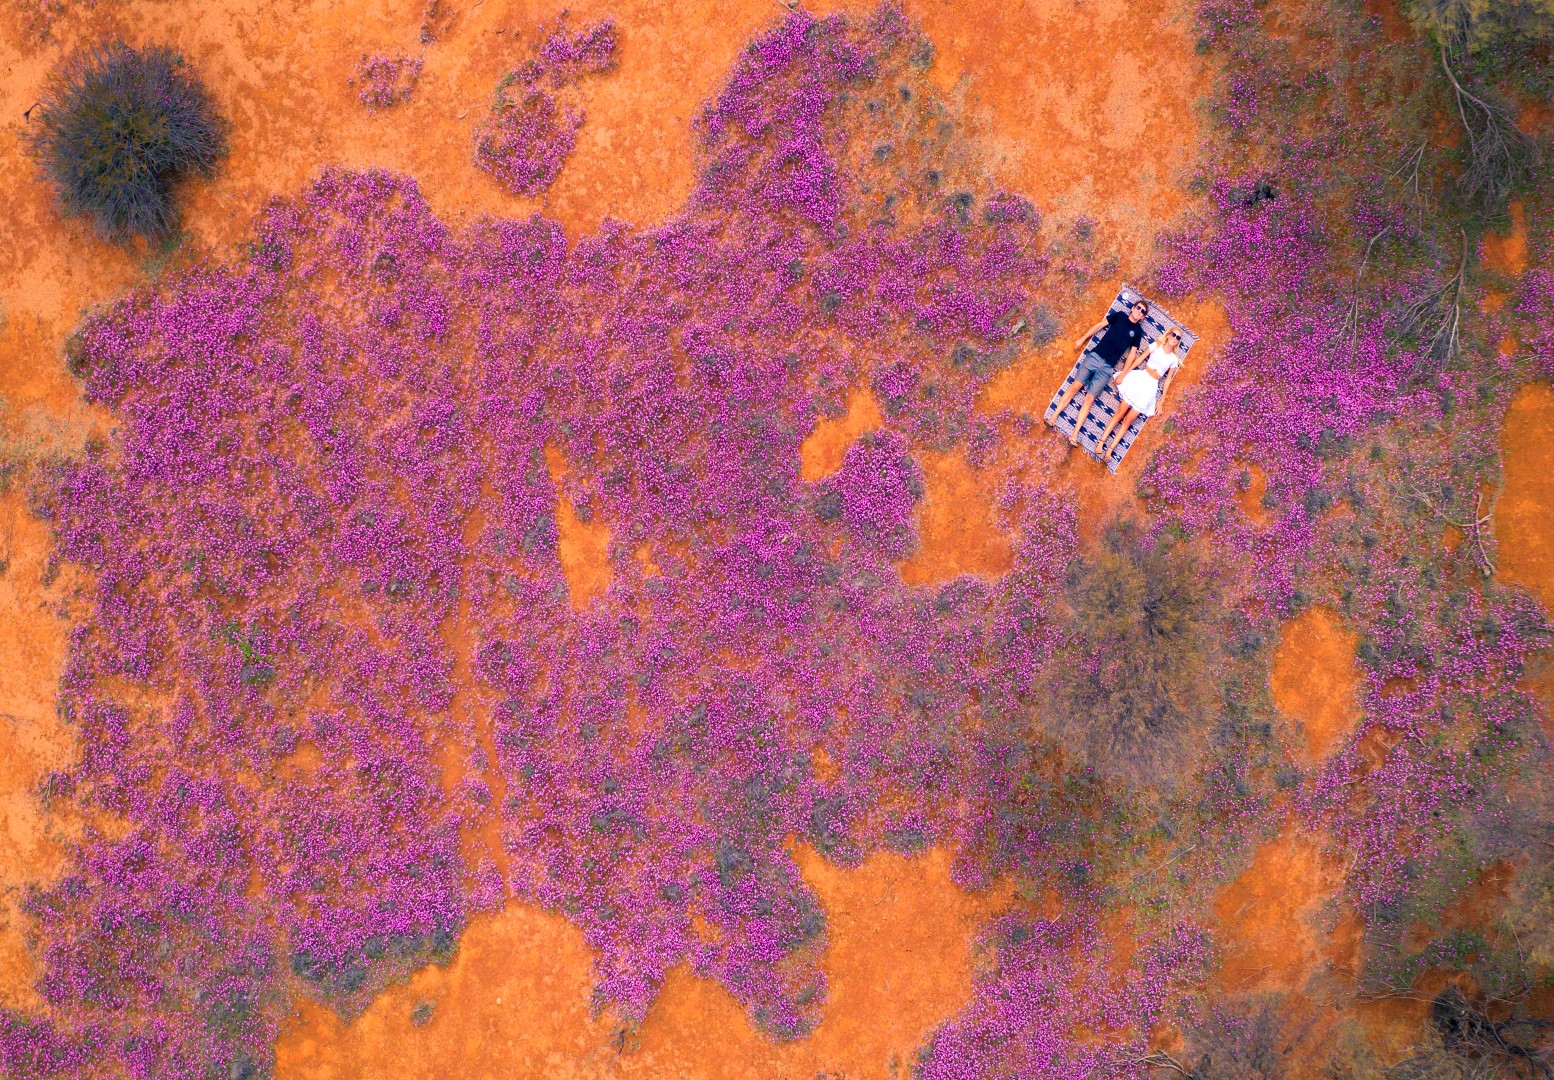 Western Australia: Wildblumensaison der Superlative